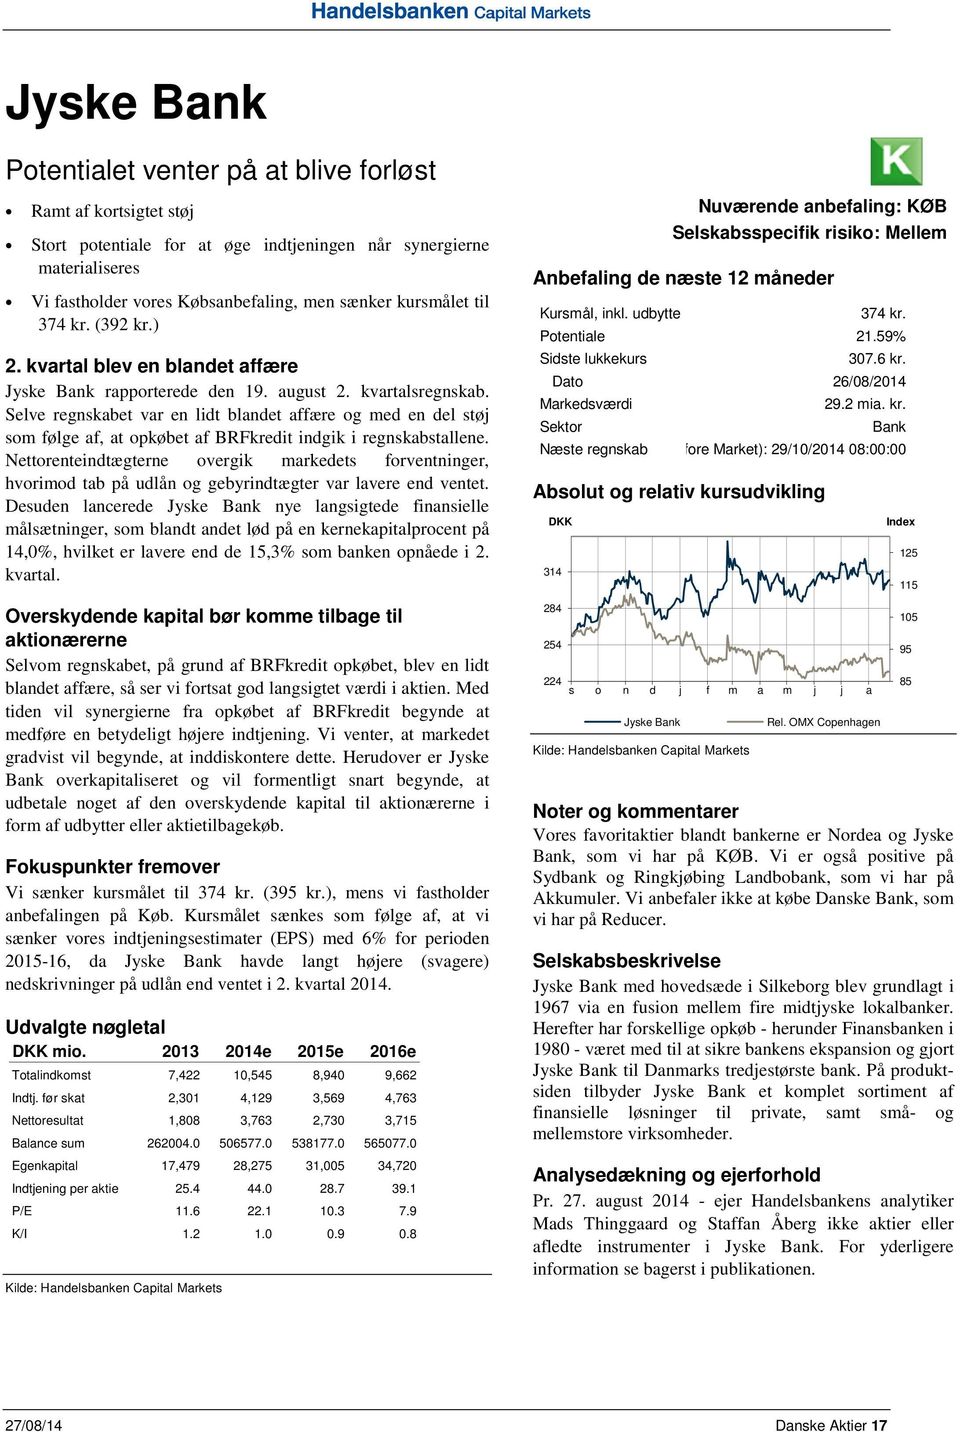 Jyske Bank 3. Næste kvt Results regnskab 2014 (Before Market): 29/10/2014 08:00:00 Nettorenteindtægterne overgik markedets forventninger, hvorimod tab på udlån og gebyrindtægter var lavere end ventet.